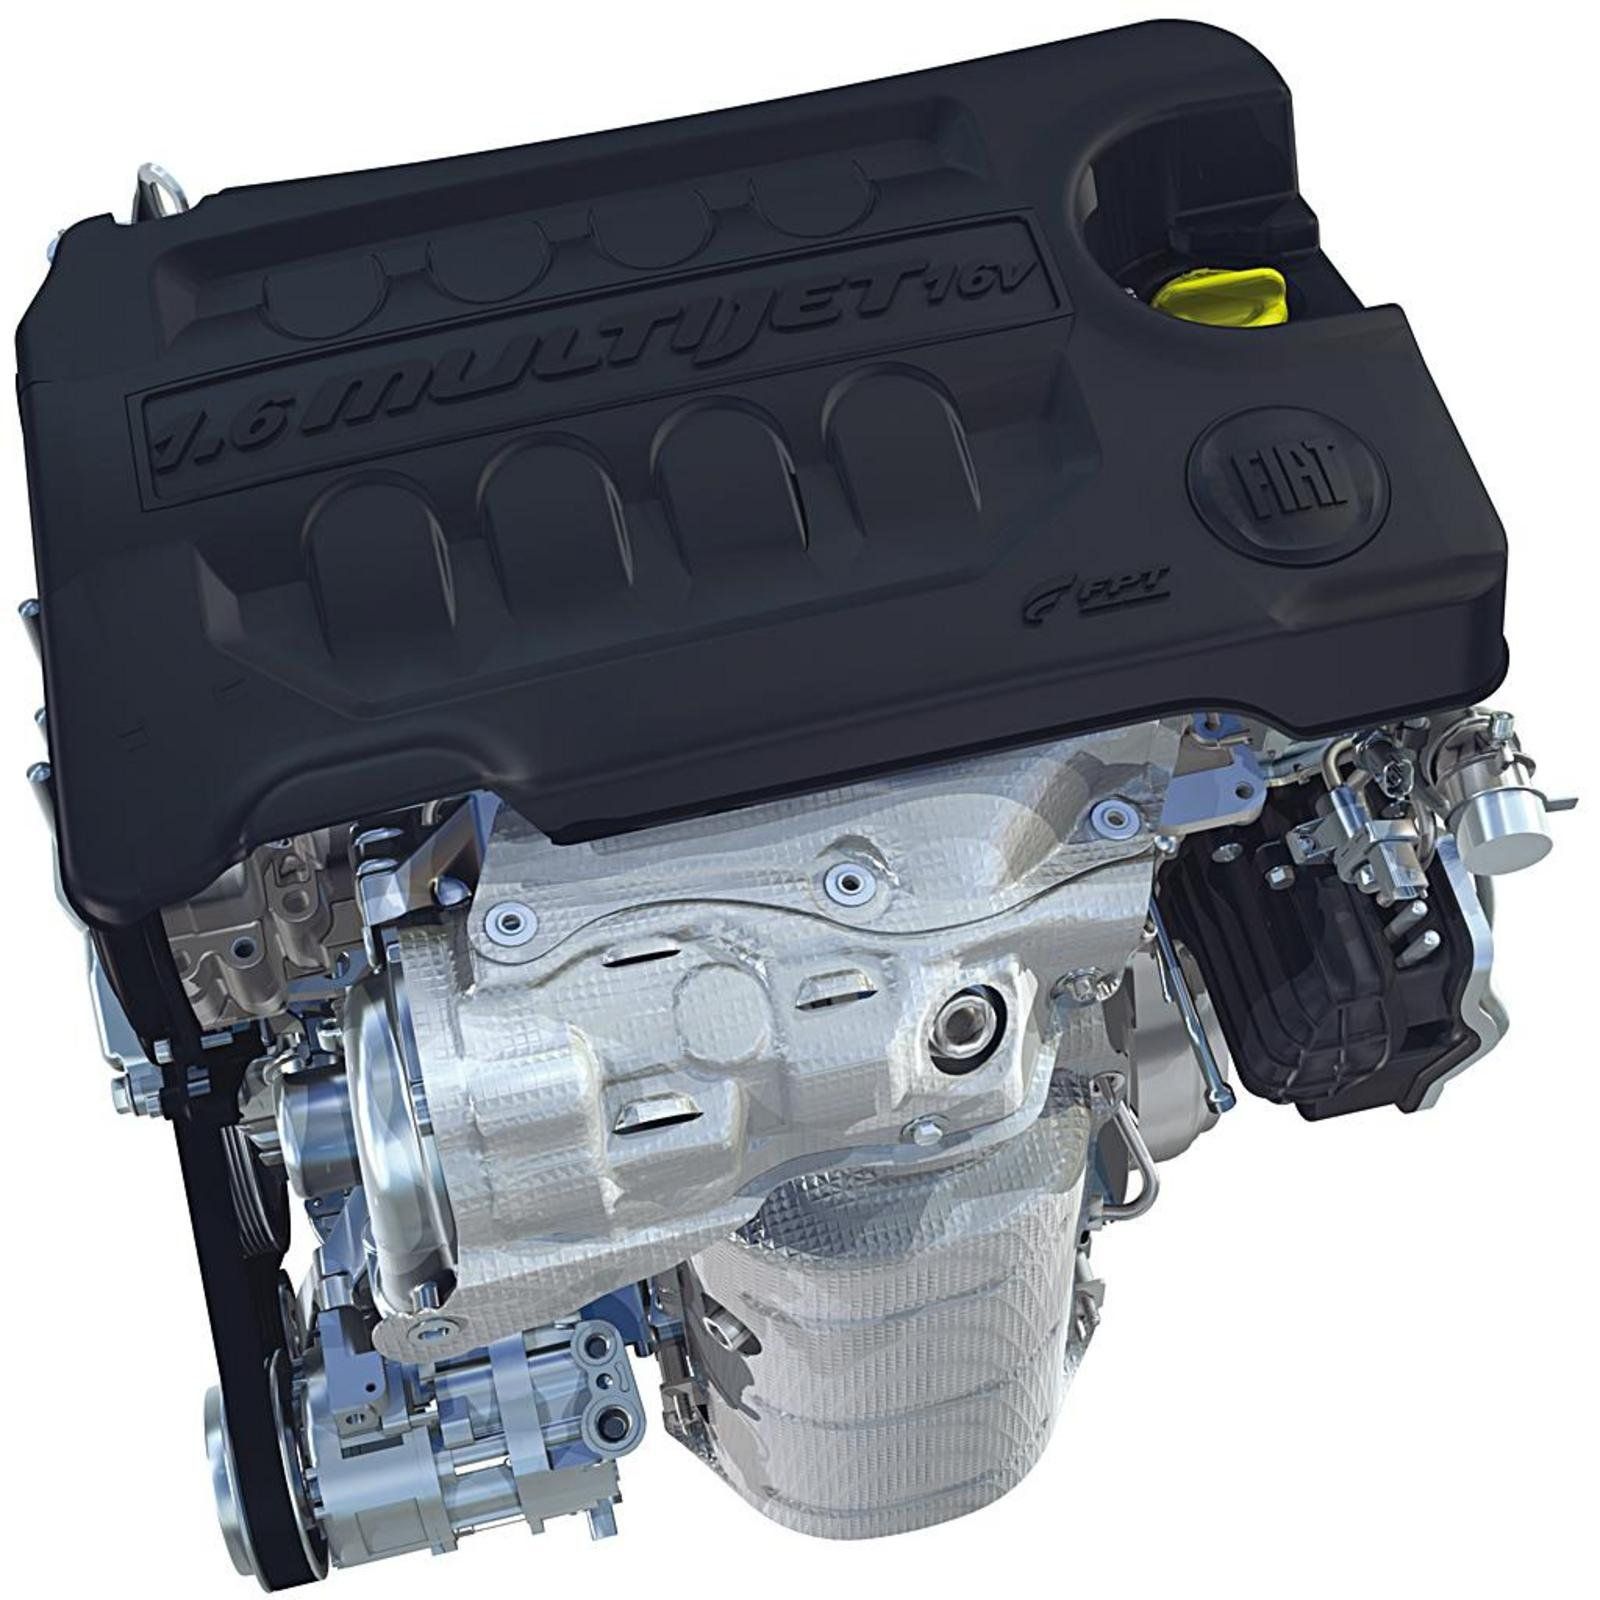 Купить двигатель добло. Fiat 1.6 Multijet. Двигатель Фиат Добло 1.4. Fiat Bravo 1,6 v16. Двигатель Fiat Doblo 1.4 двигатель.